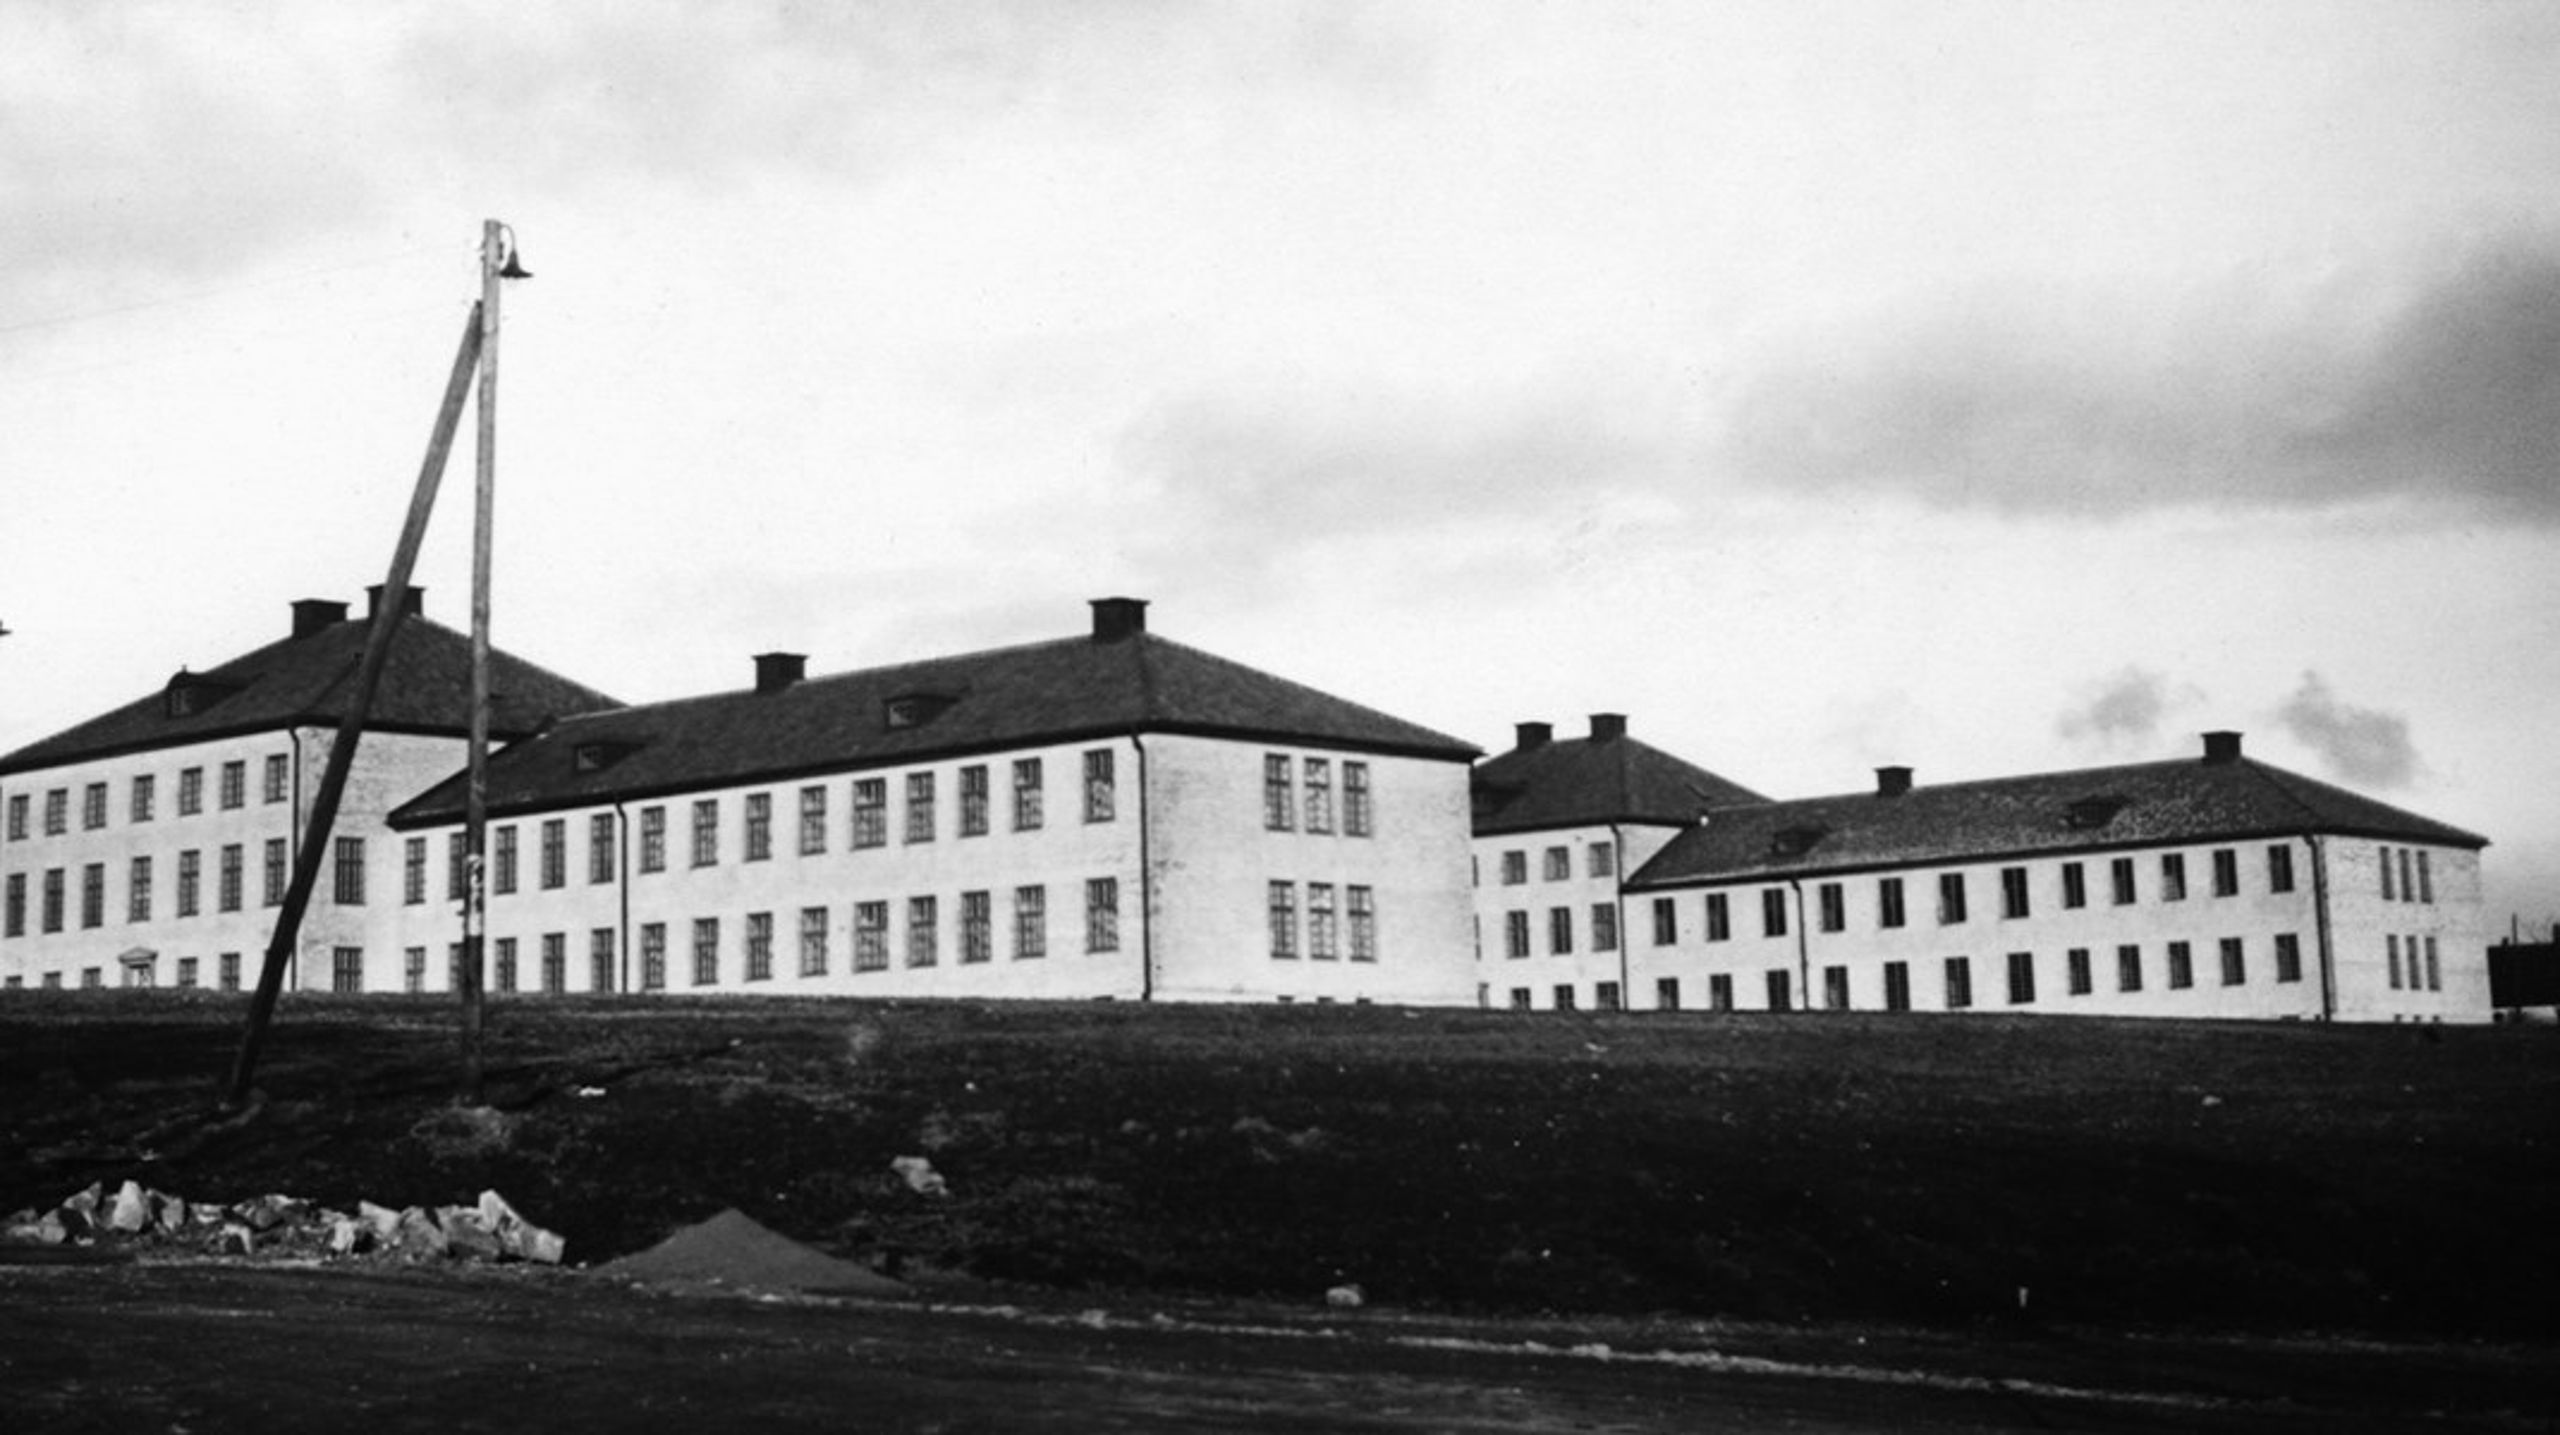 Vipeholms sjukhus i Lund 1936.&nbsp;"Under 1900-talet fanns det många anstalter och institutioner runt om i Sverige som var hem för barn och vuxna med olika funktionsnedsättningar."